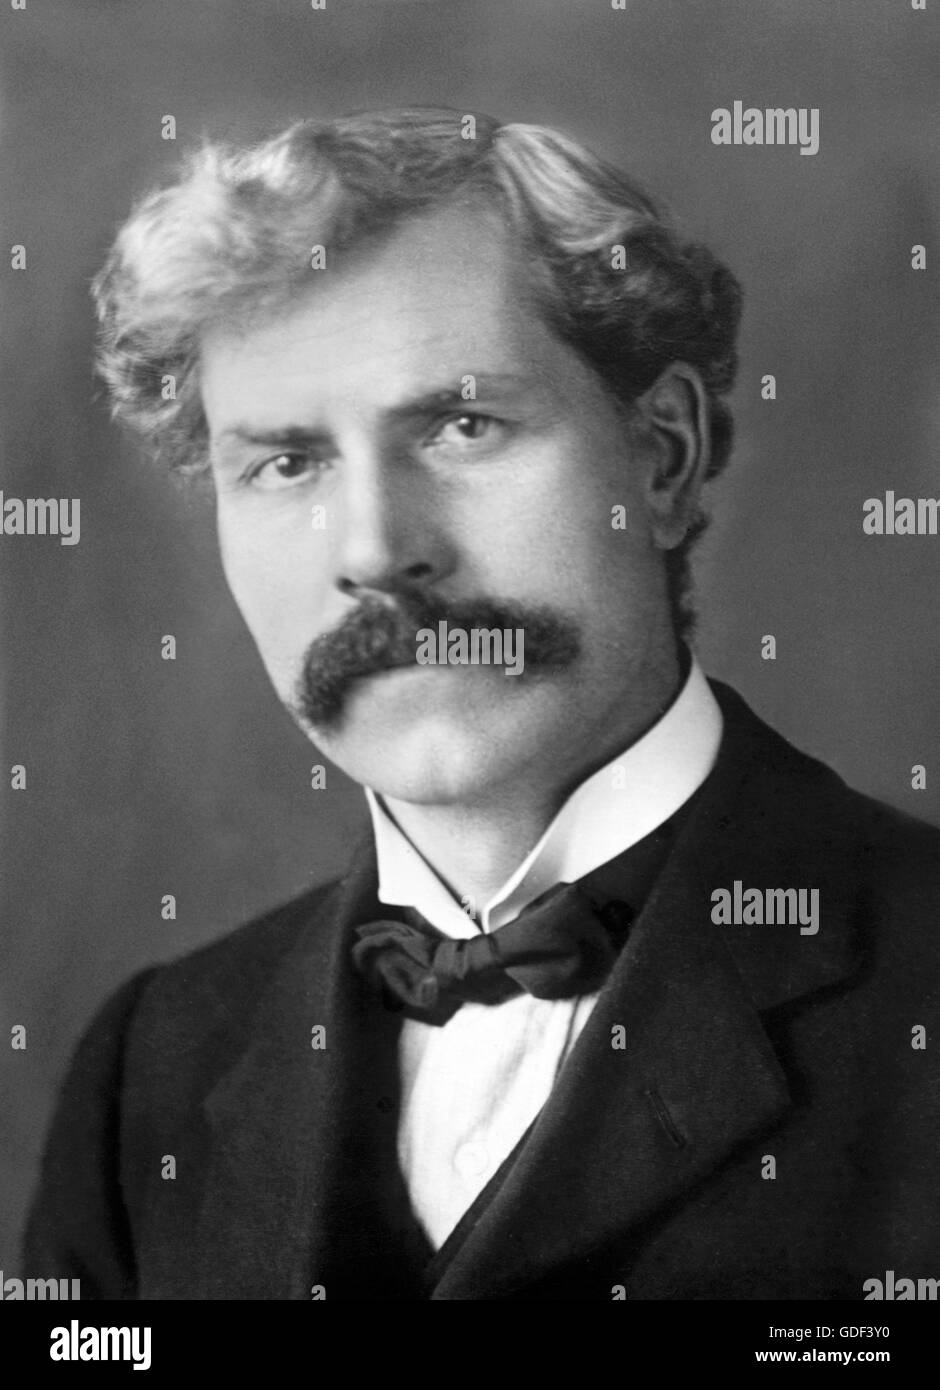 Ramsay Macdonald. Porträt der britischen Labour Party Premierminister James Ramsay MacDonald (1866-1937), von Bain News Service, Datum unbekannt, aber möglicherweise c.1910. Stockfoto